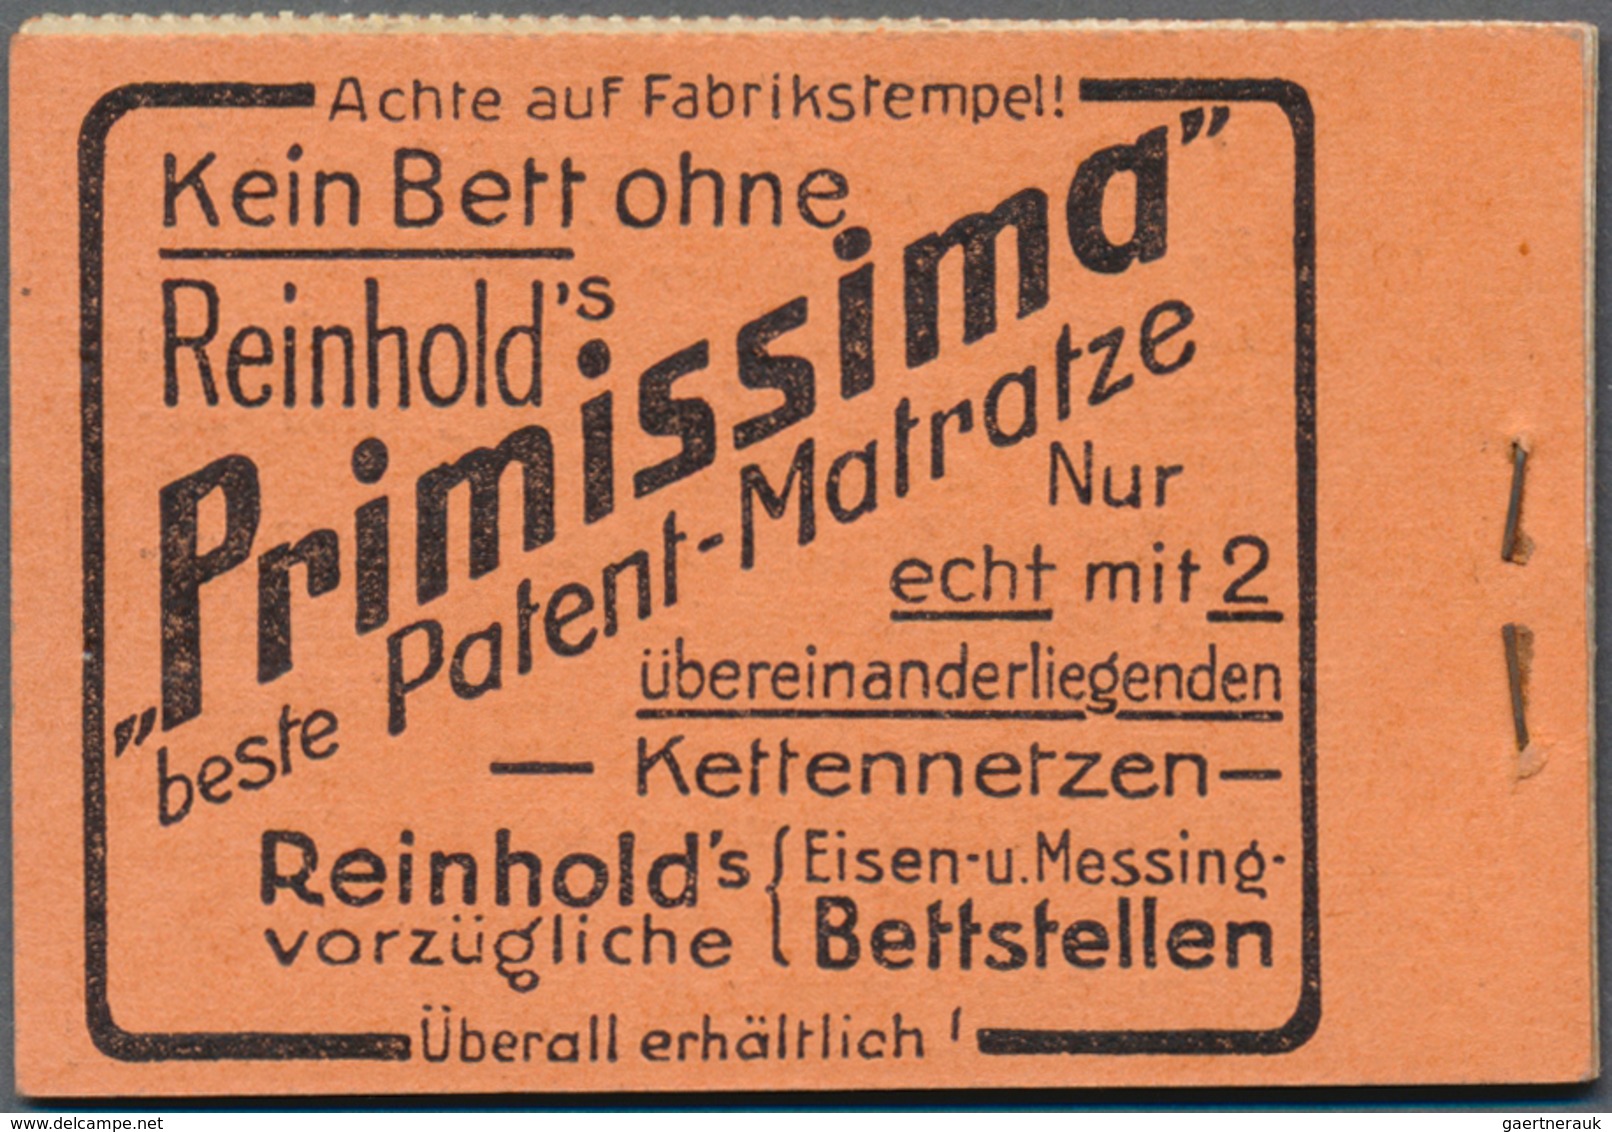 18222 Deutsches Reich - Markenheftchen: 1911, Germania Markenheftchen In ROSA (Ordnungs-Nr. 10) Mit Origin - Booklets